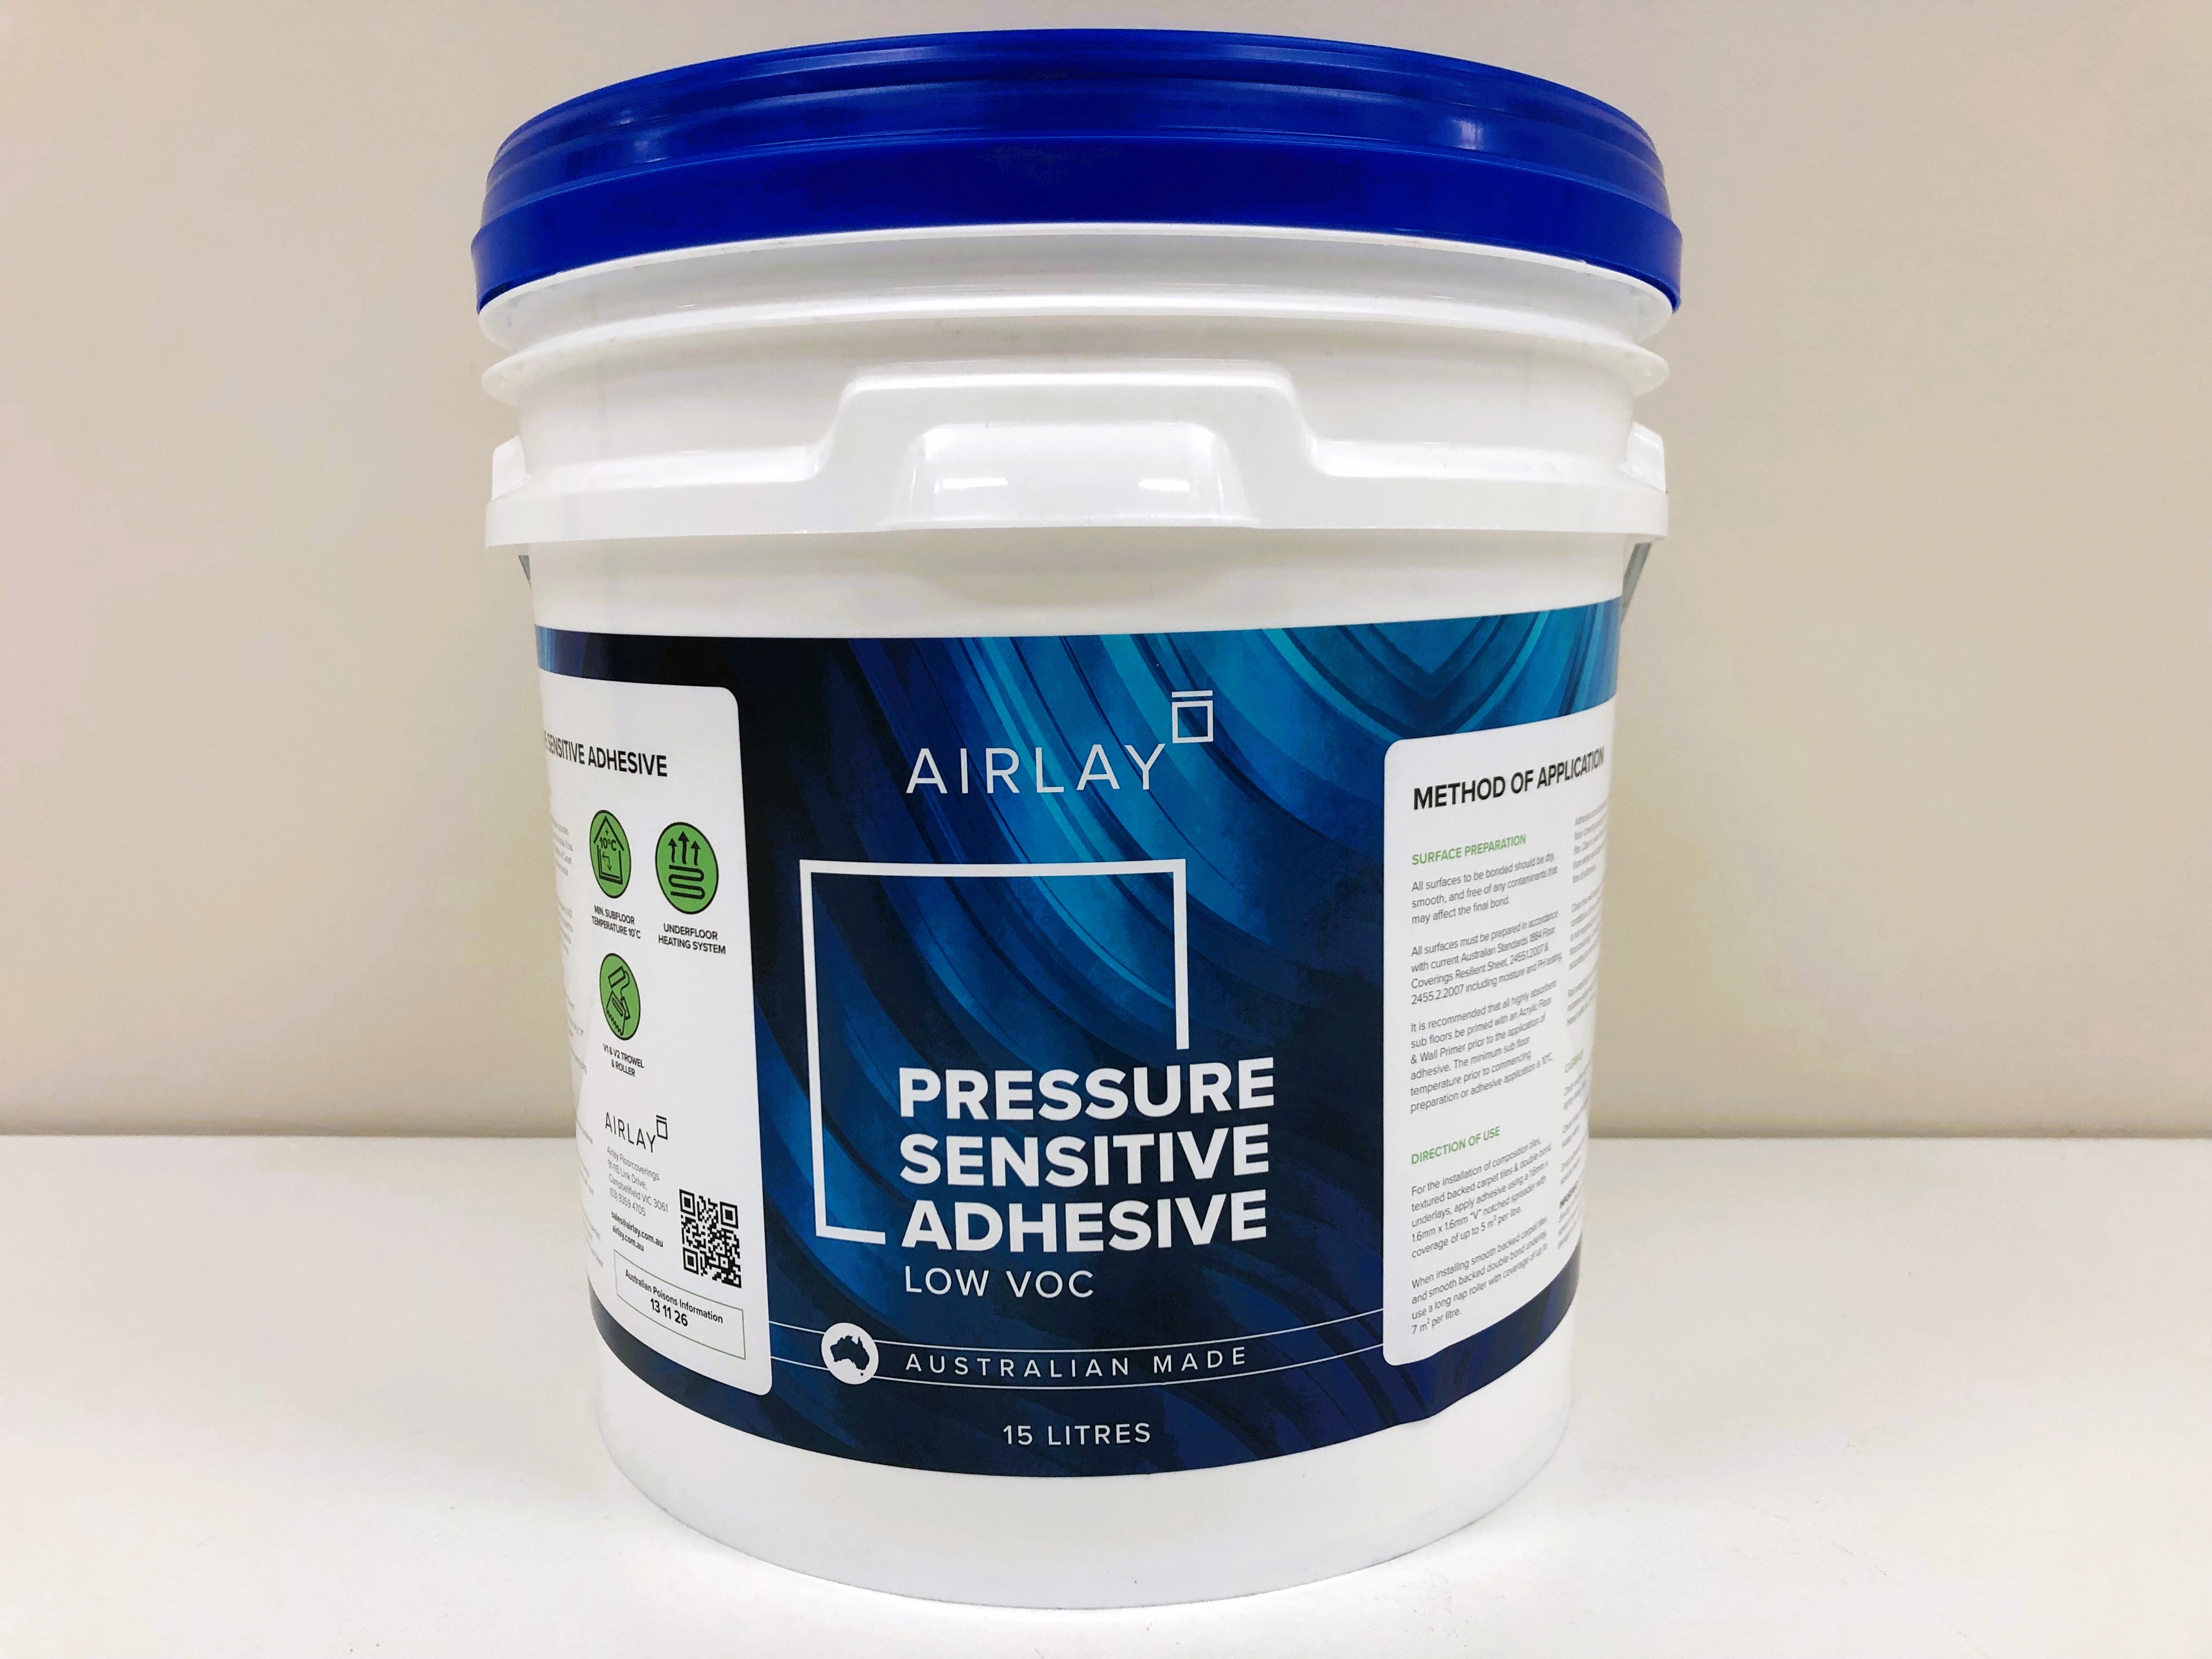 Airlay Pressure Sensitive Adhesive